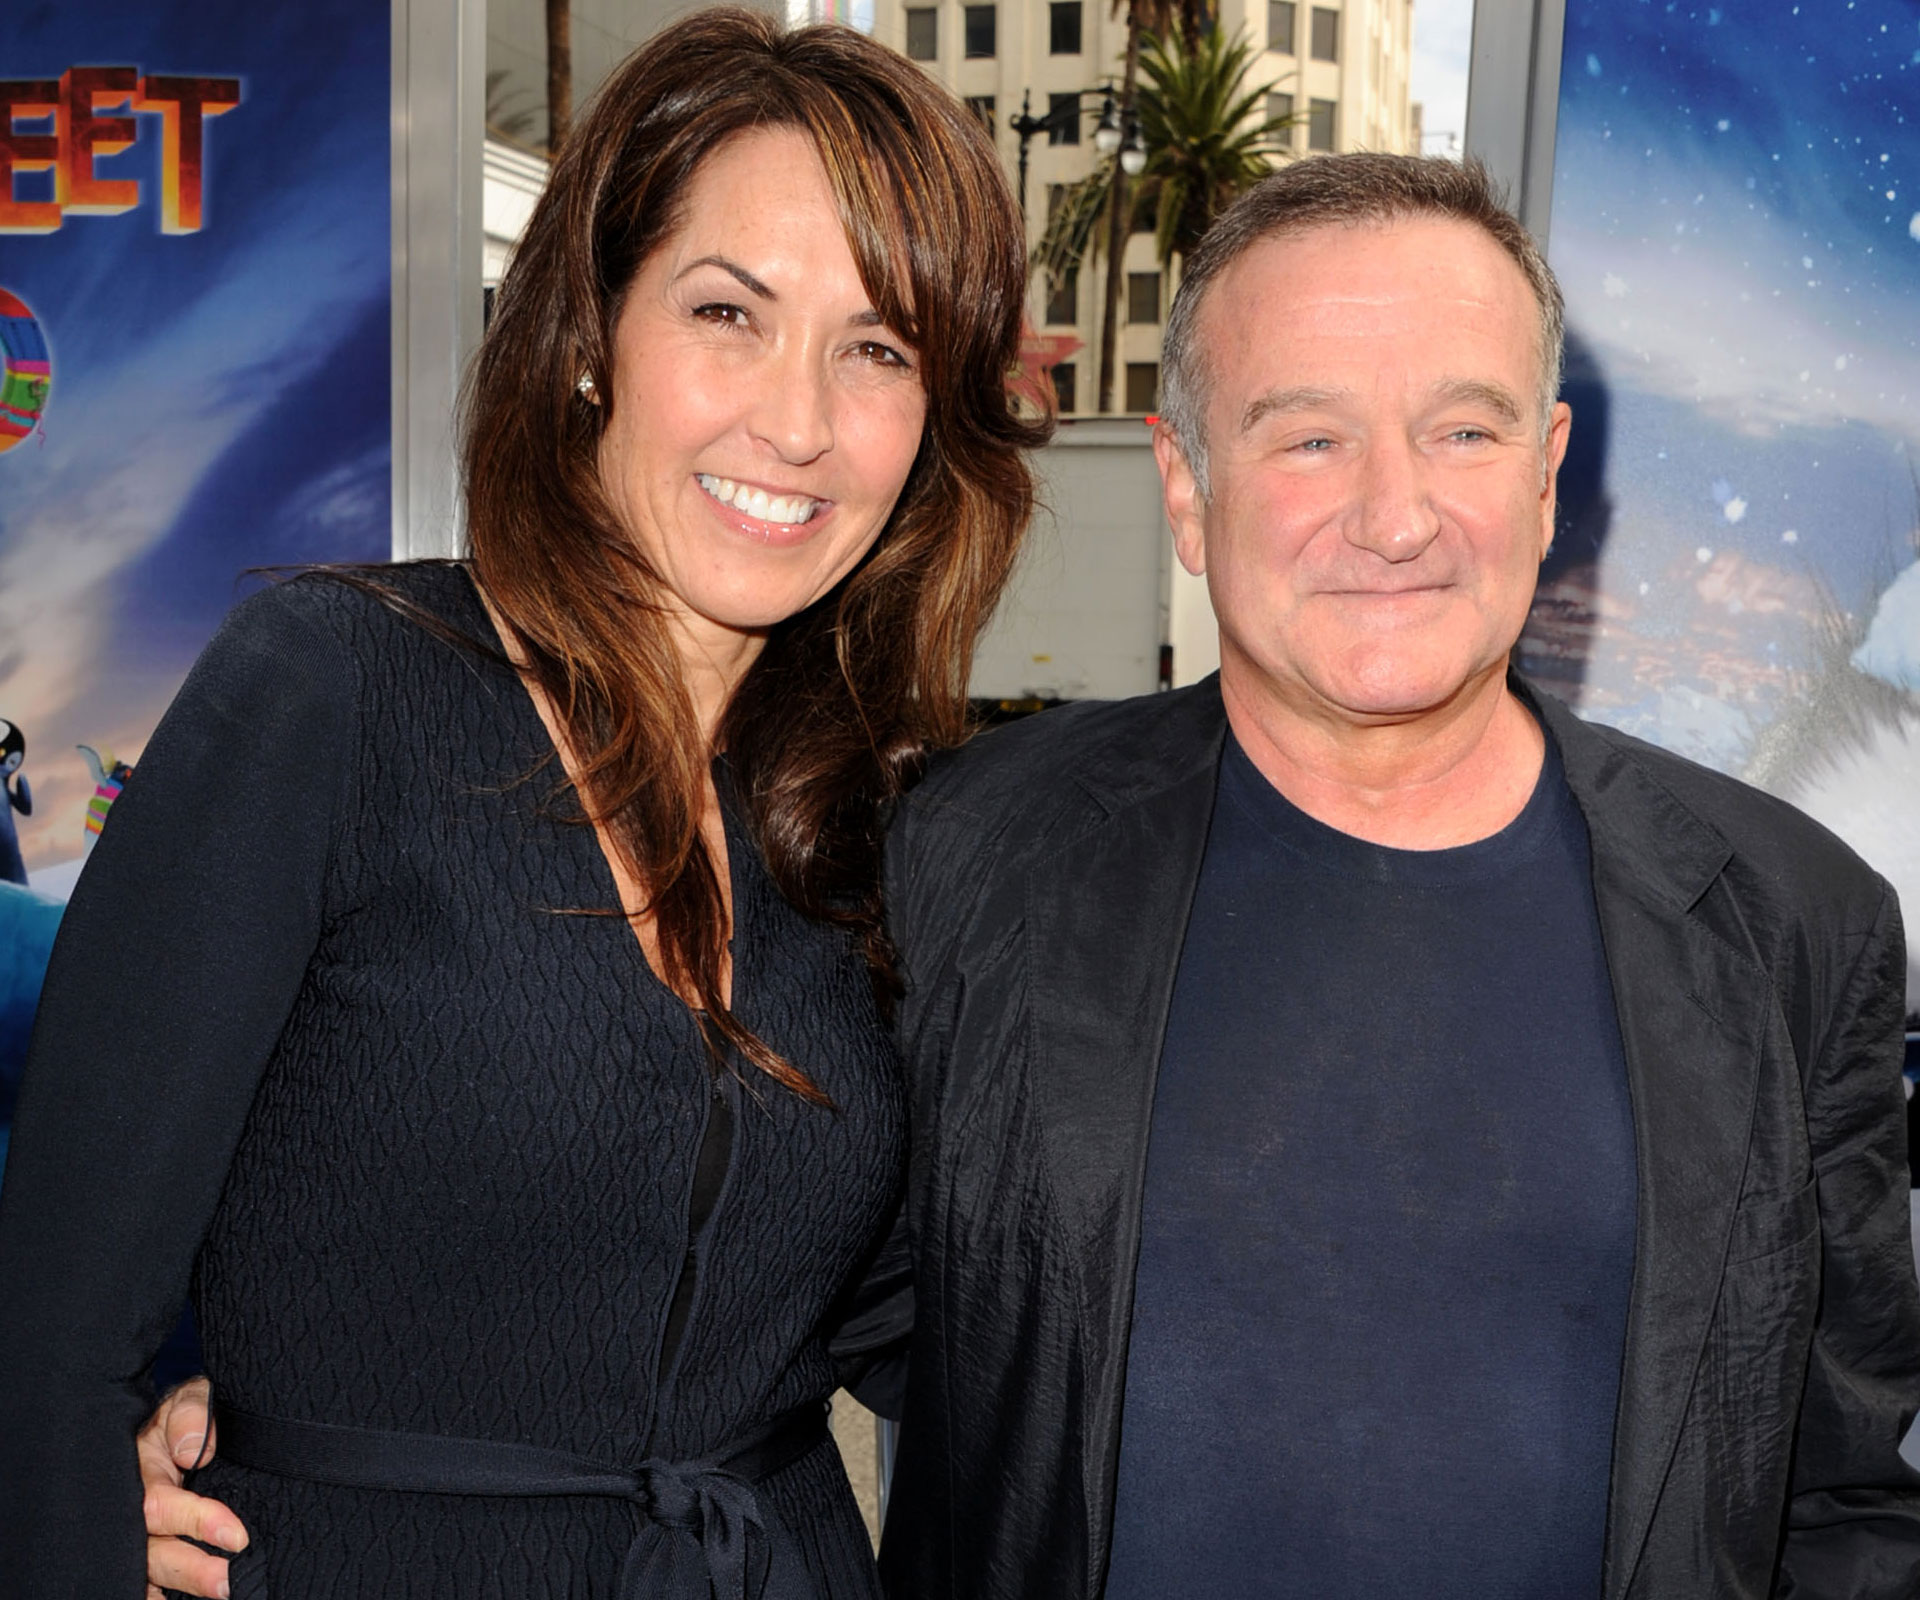 Robin Williams shines in heartbreaking lost scenes from ‘Mrs. Doubtfire’